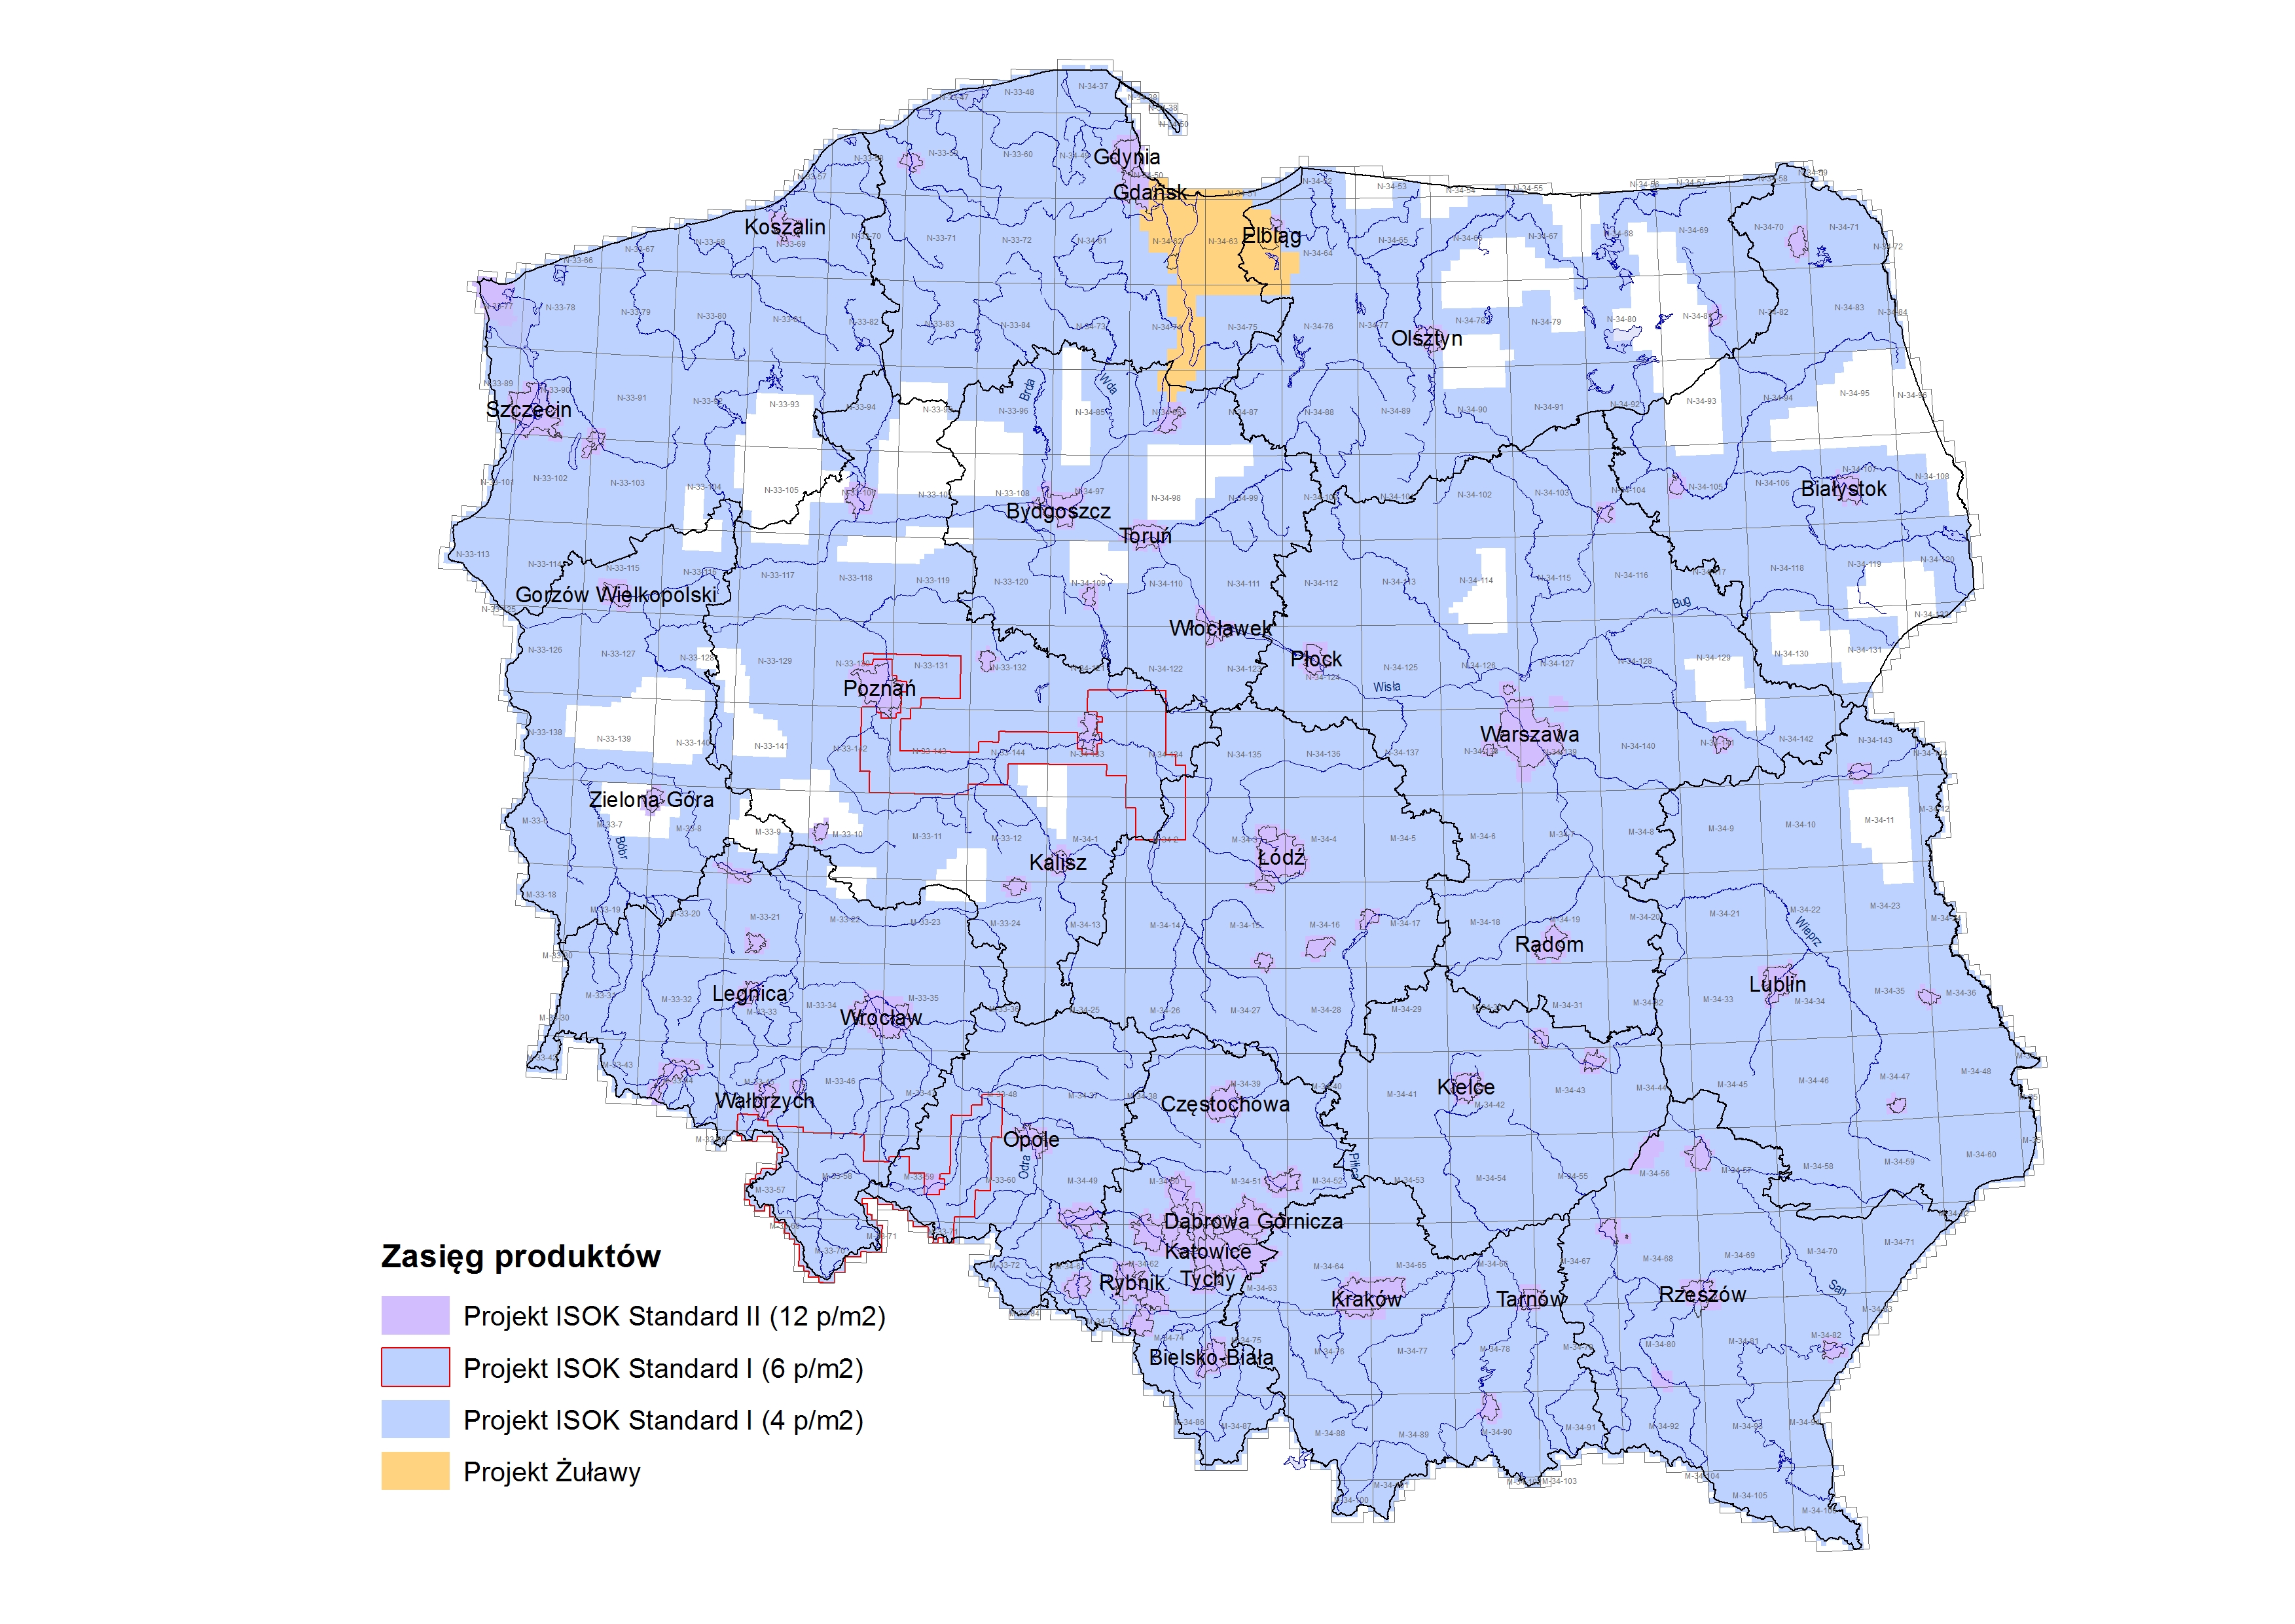 Mapa Polski w odcieniach kolorów niebieskiego i fioletowego prezentująca obszary ndla których dostępne są dane zgromadzone w ramach Projektu ISOK